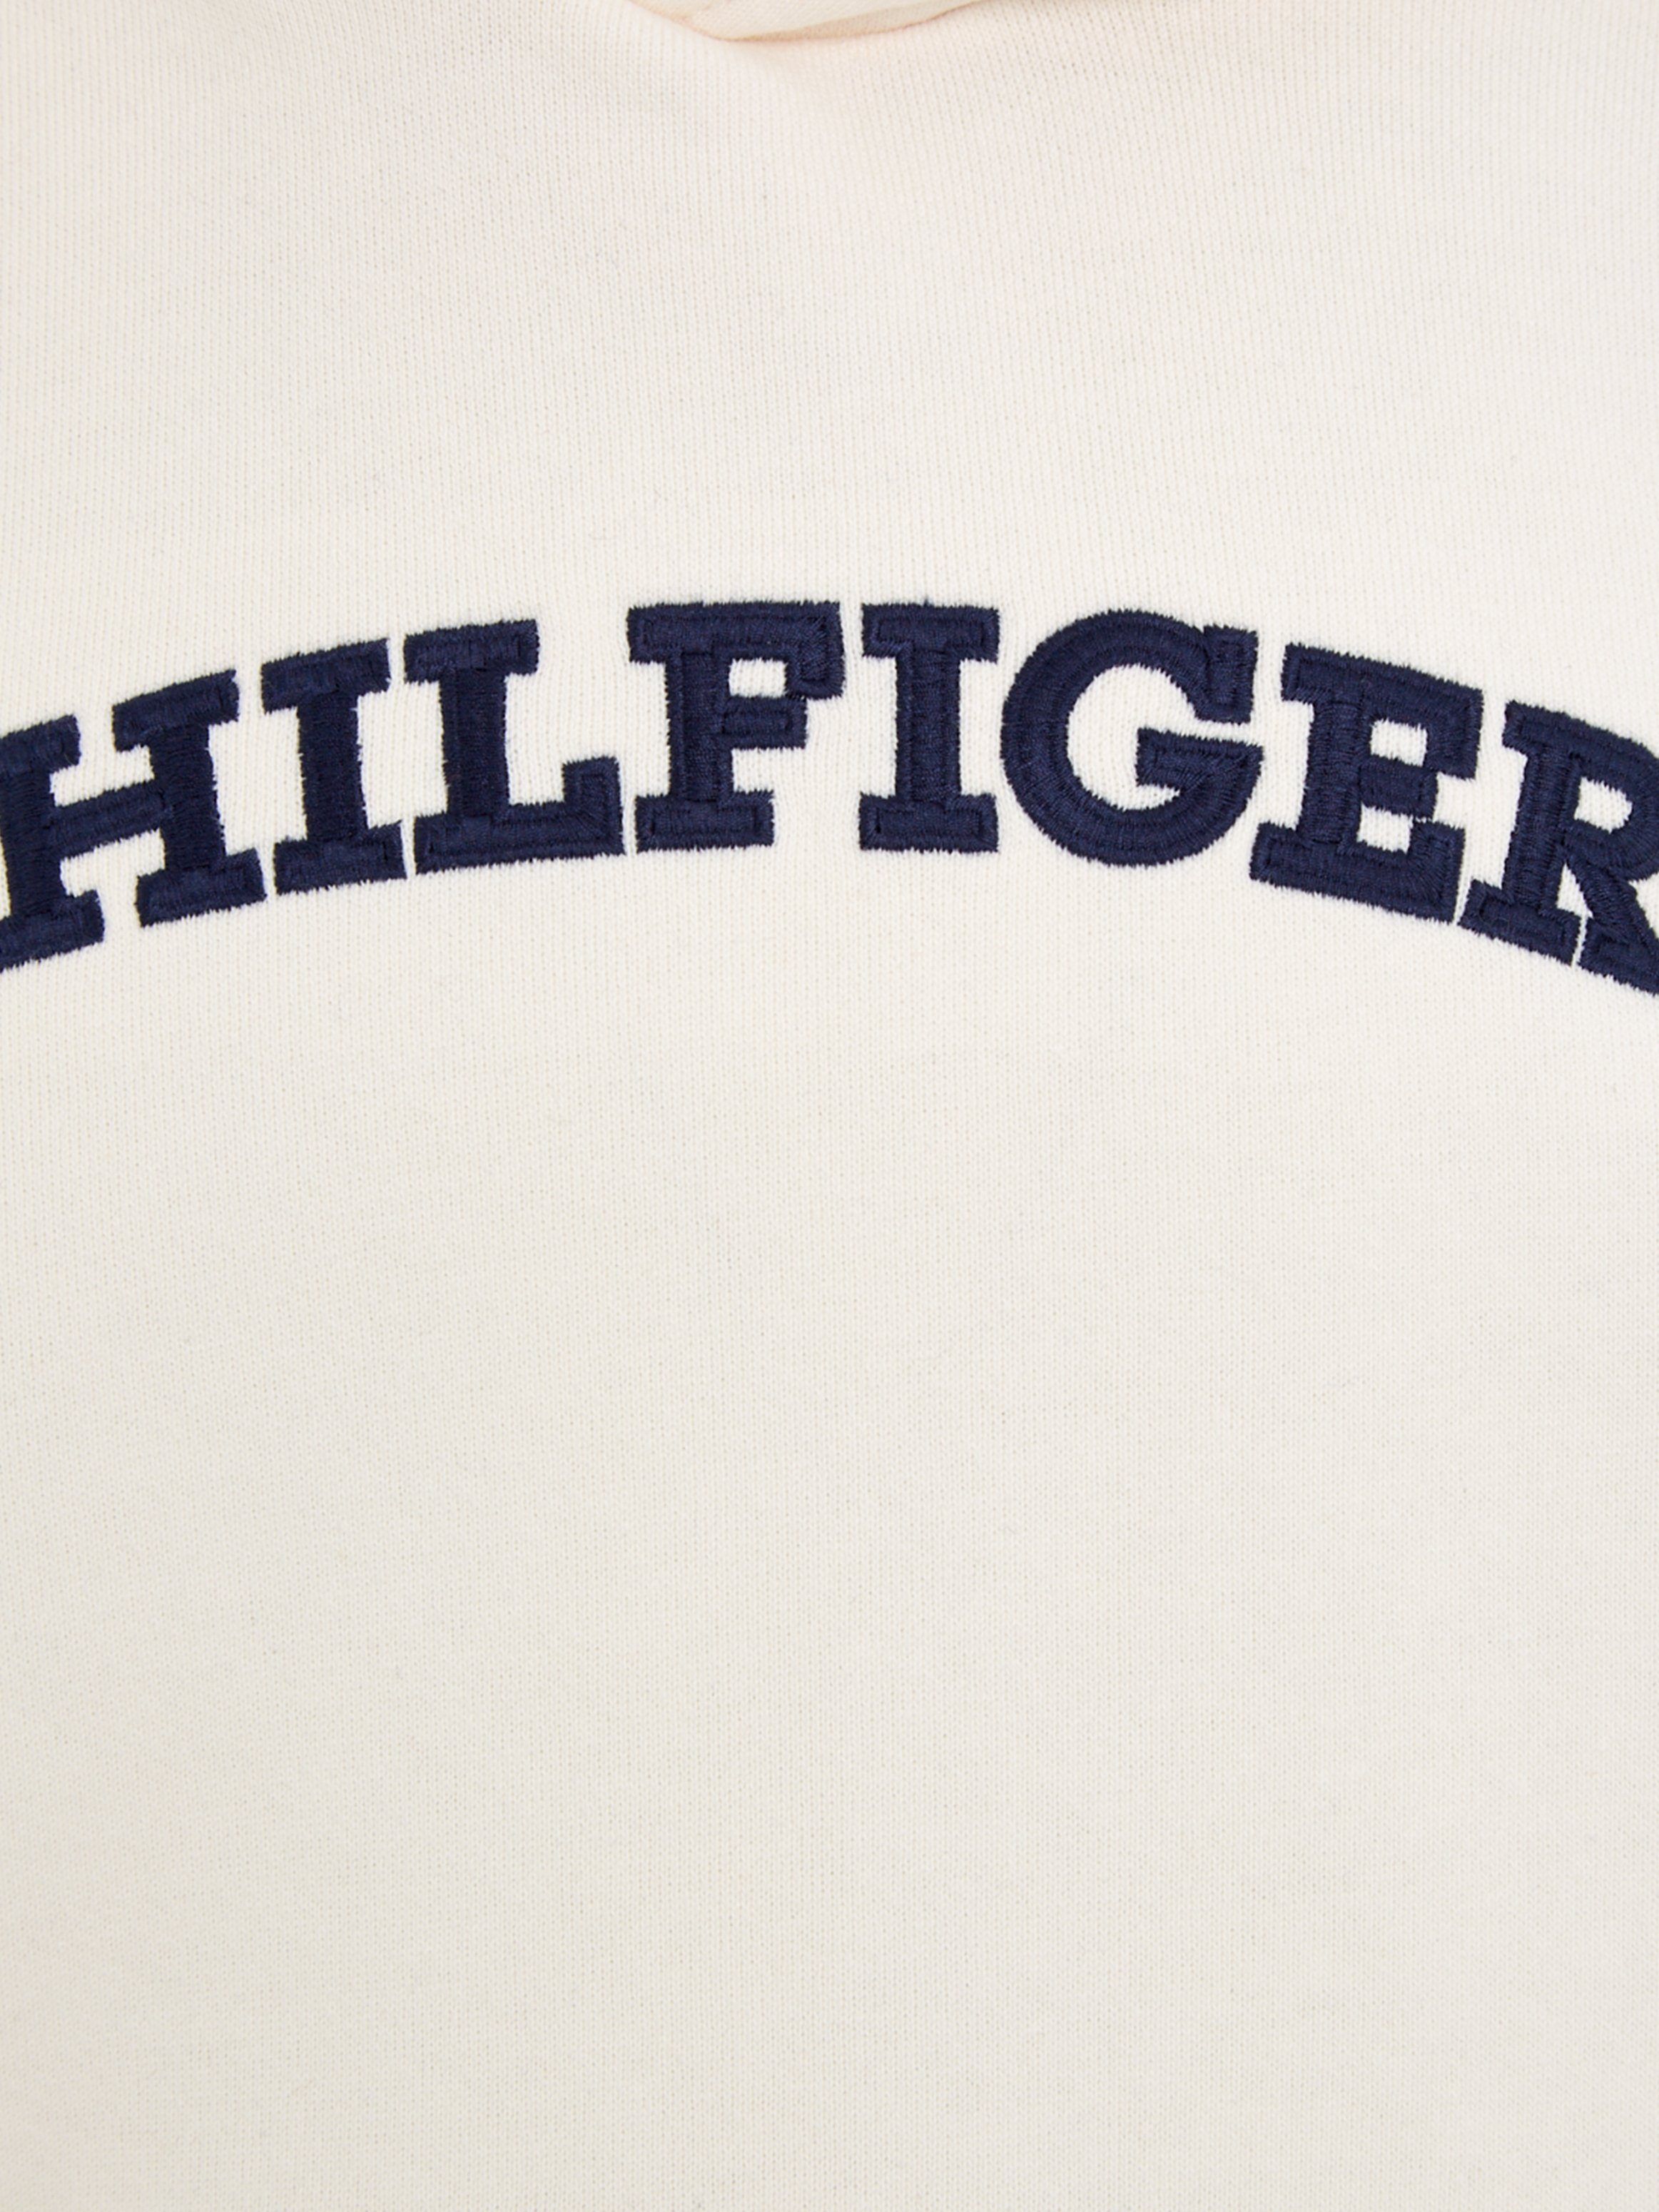 Ancient_White Hilfiger Hilfiger HOODIE HILFIGER mit Logo-Schriftzug ARCHED Kapuzensweatshirt Tommy